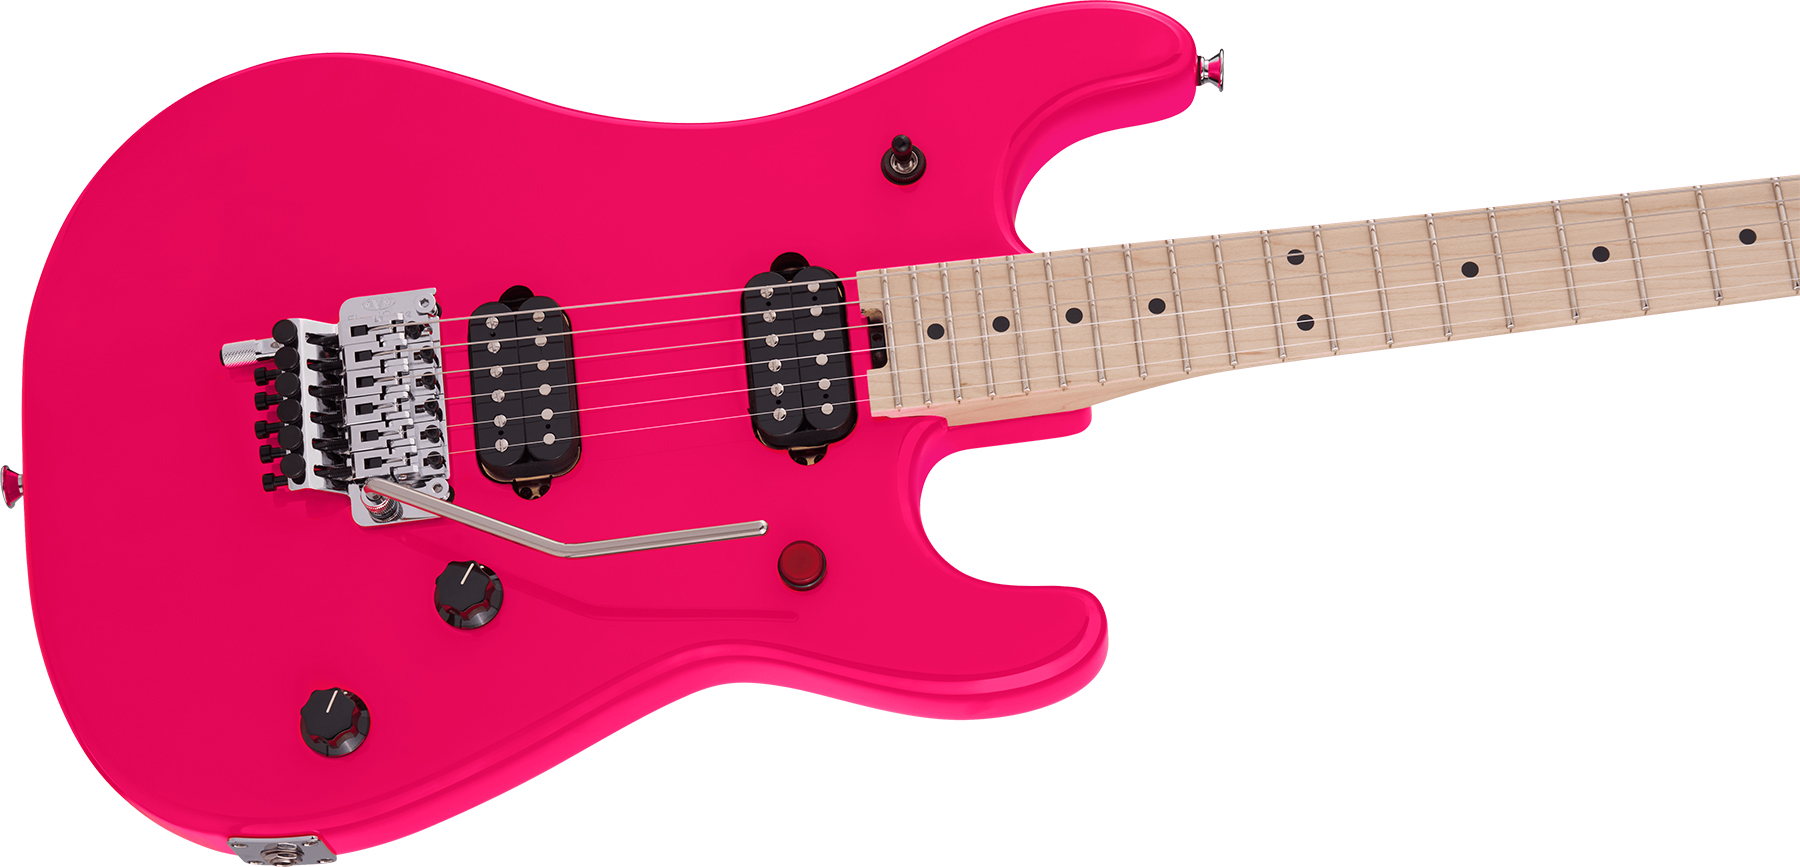 Evh 5150 Standard Mex 2h Fr Mn - Neon Pink - Guitarra eléctrica con forma de str. - Variation 2